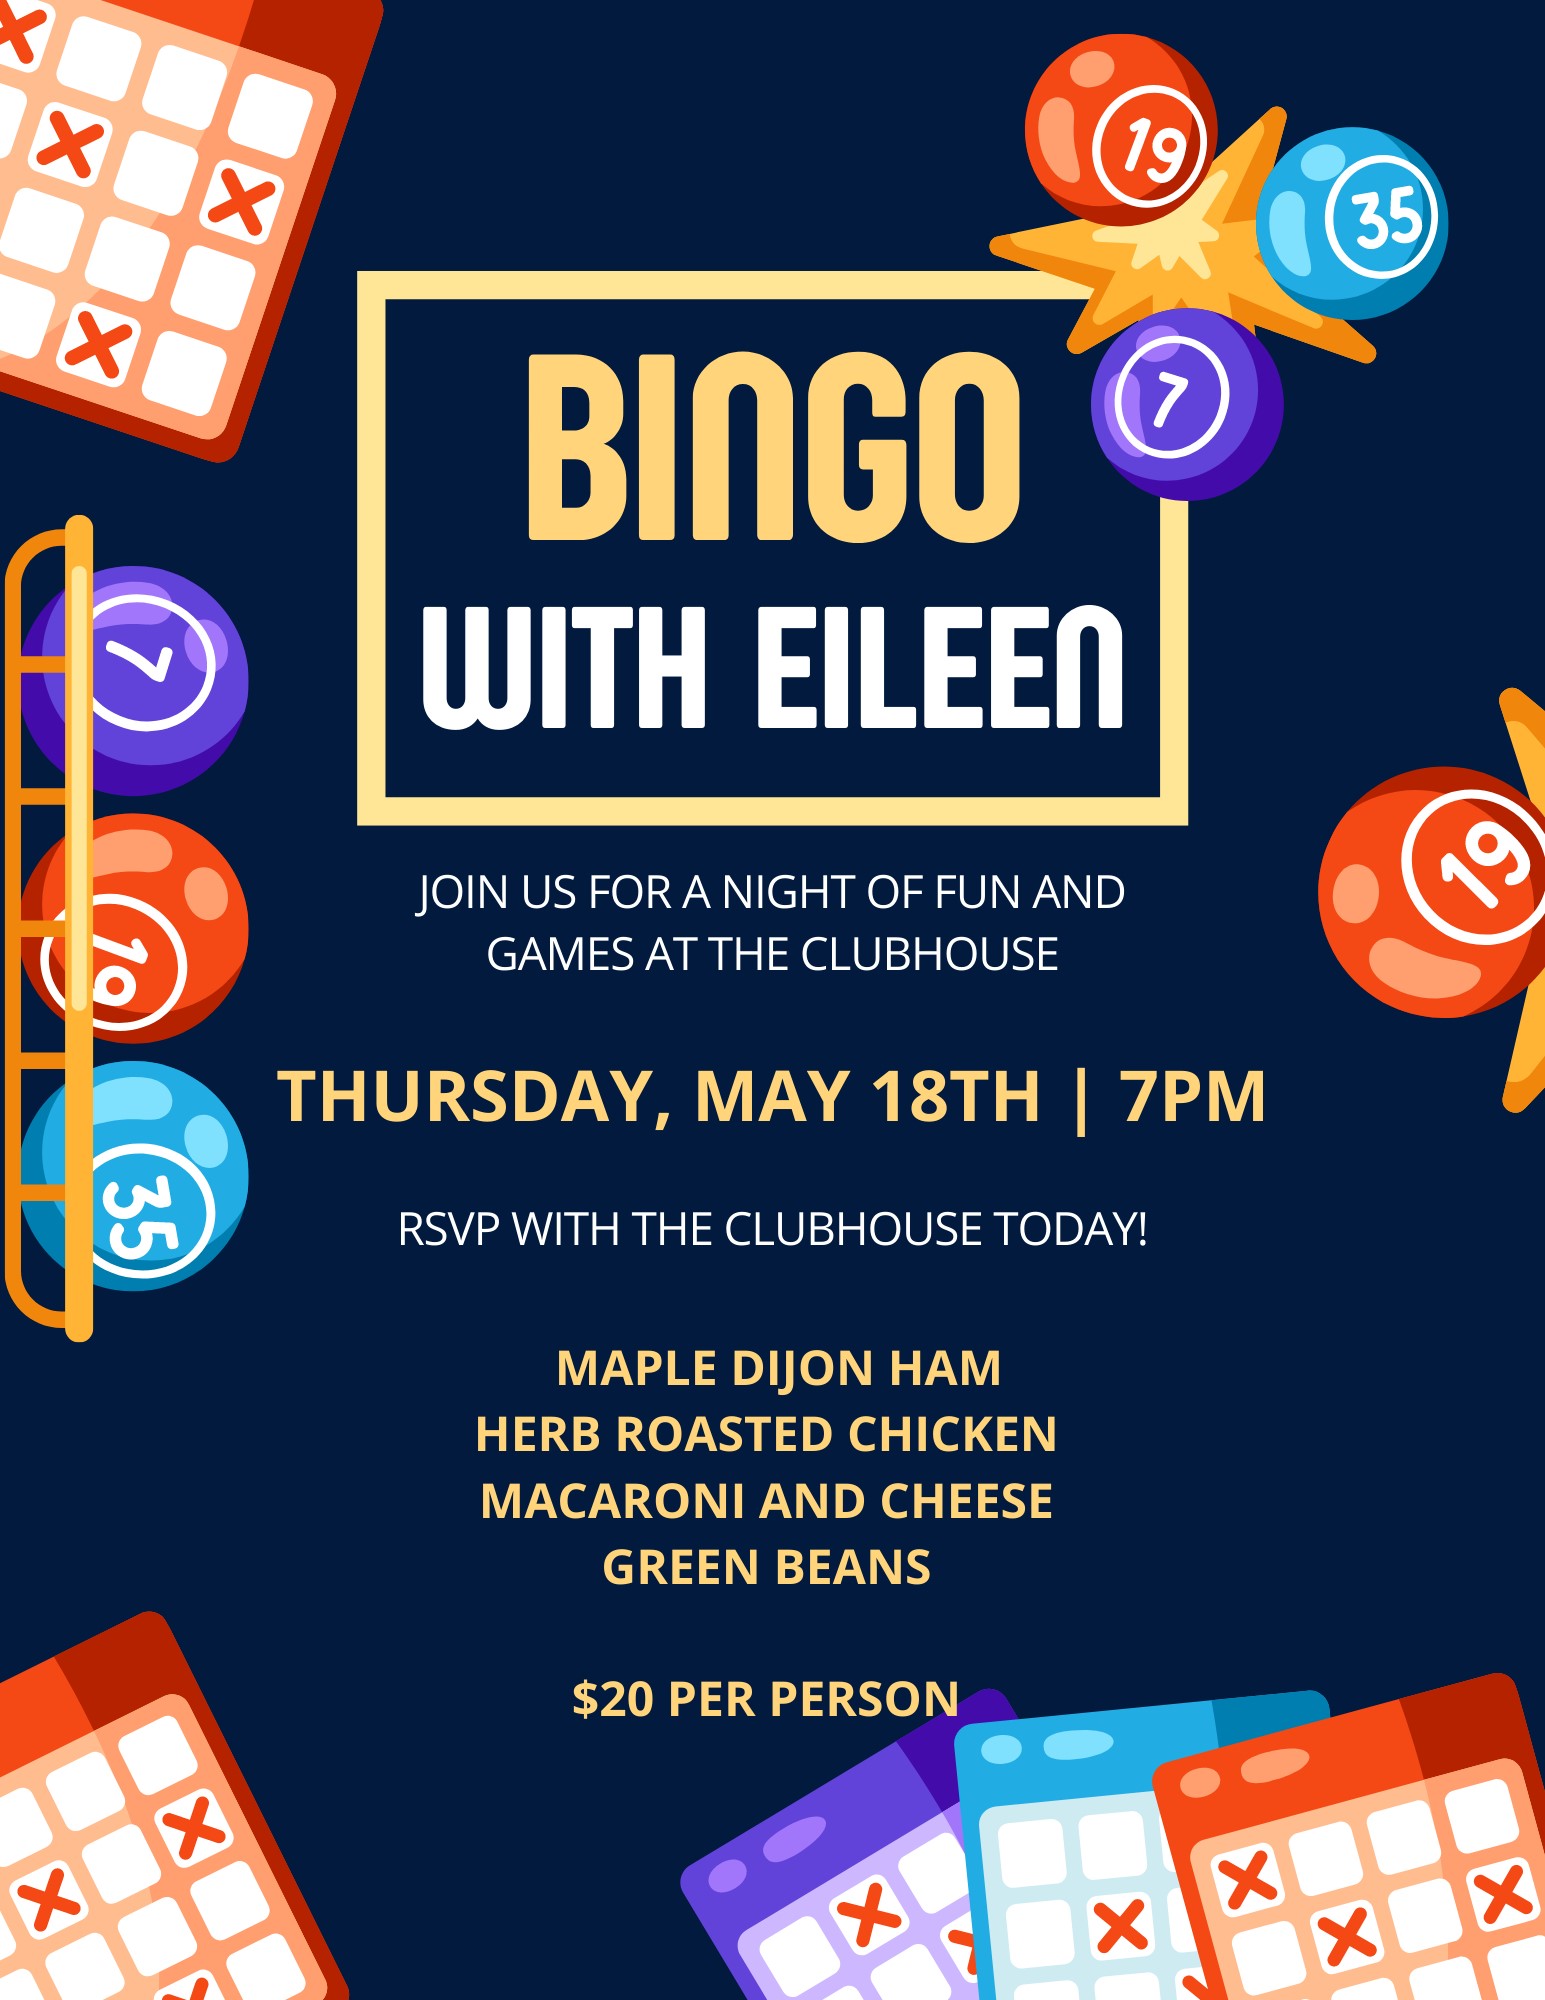 Bingo with Eileen